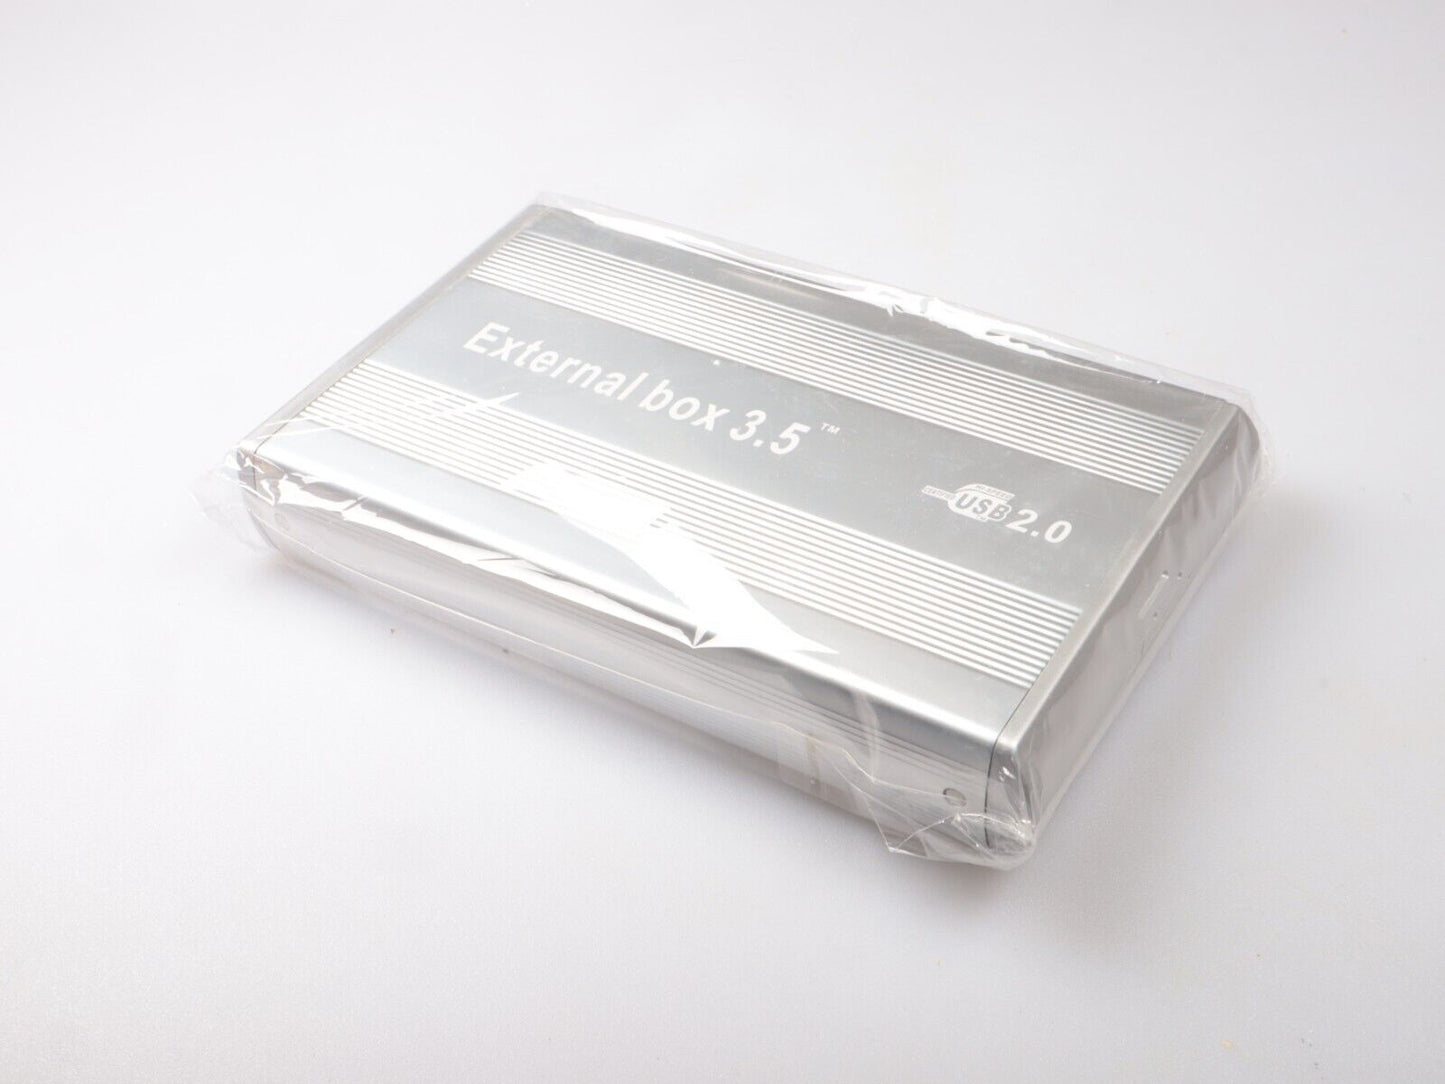 Externe doos 3,5 inch | USB 2.0 | 480 Mbps | SSD-harde schijf